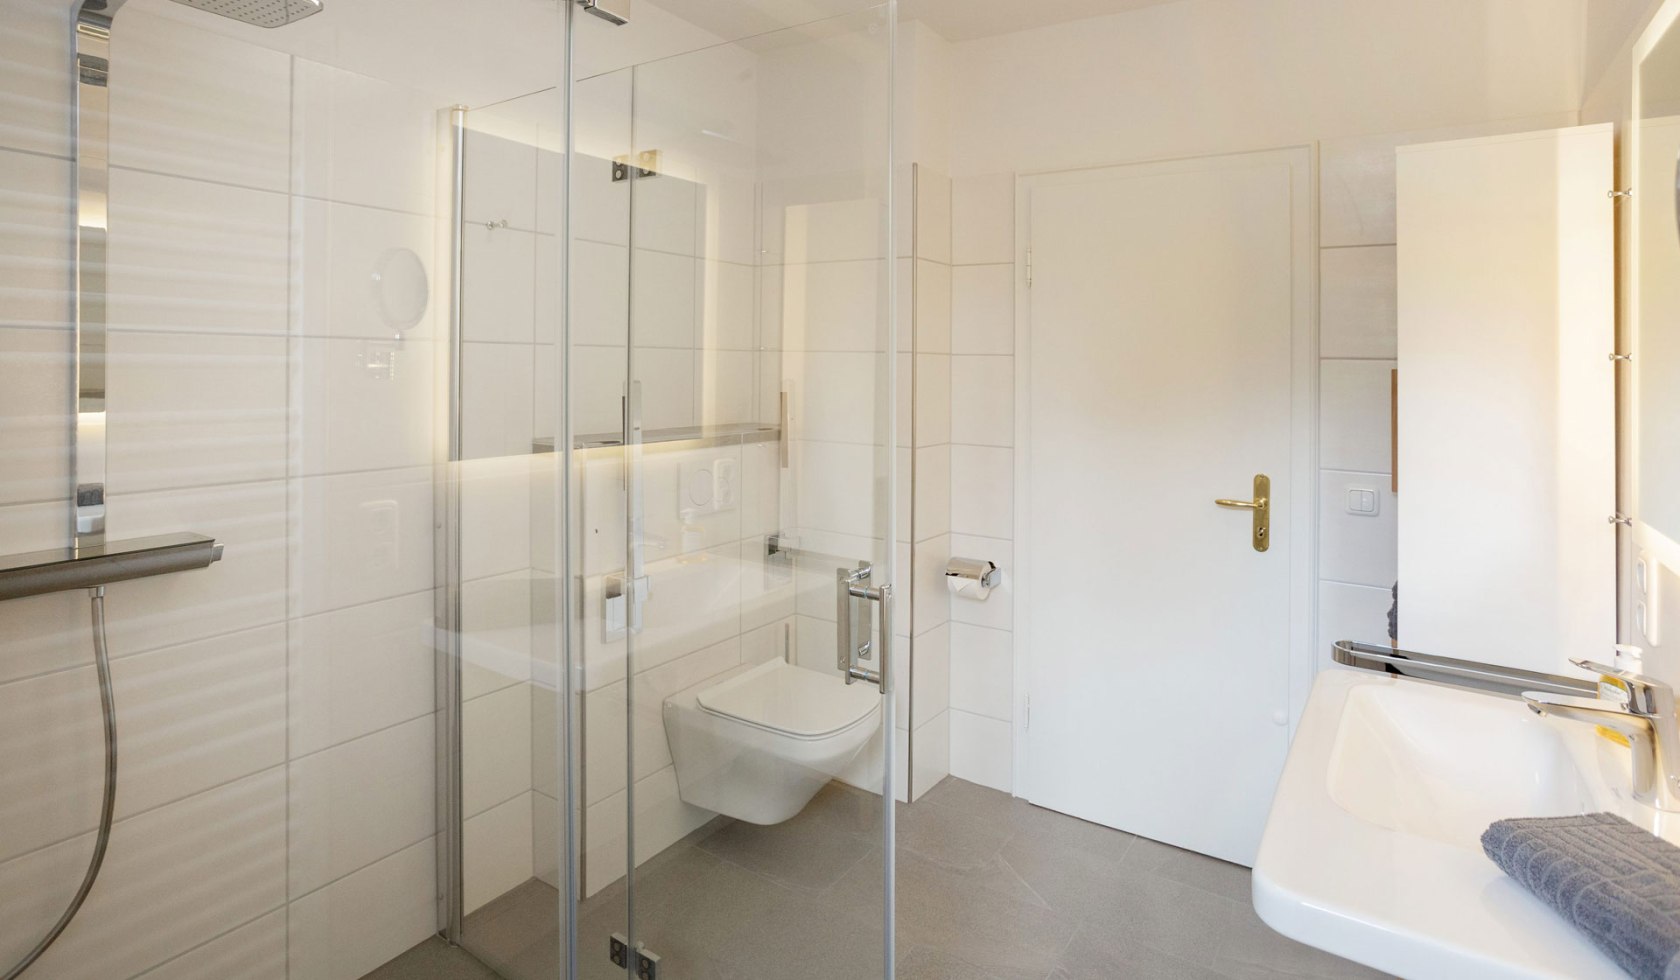 Sehr modernes Badezimmer mit Regendusche., © Claudia Drewes / Christina Opeldus